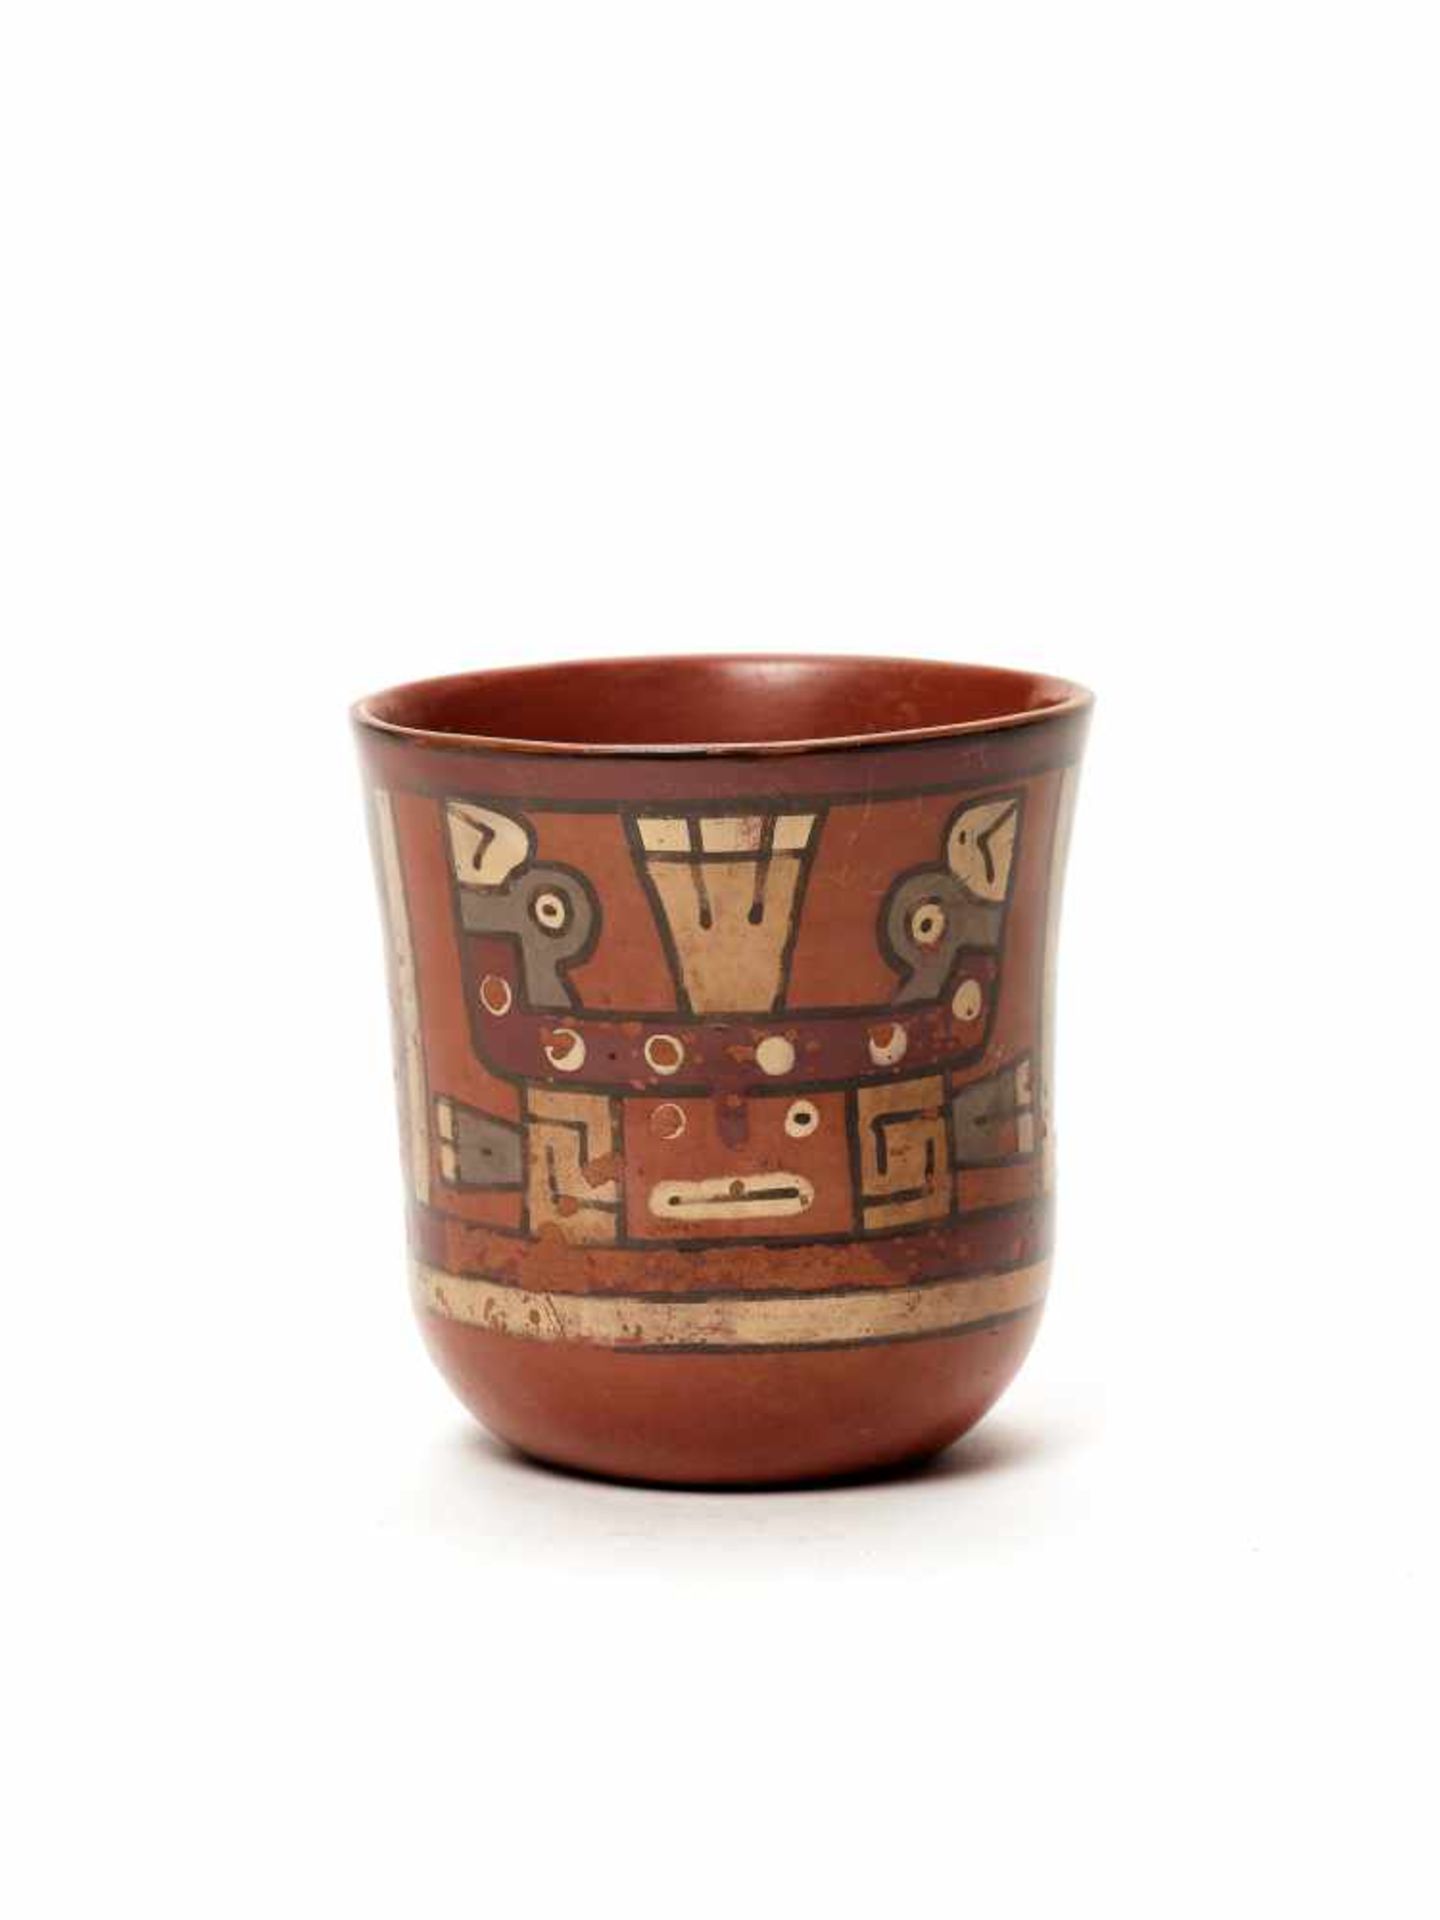 THREE CUPS AND A VESSEL- HUARI/ WARI CULTURE STYLE Painted clayHuari/ Wari culture style, Peru, - Image 10 of 13